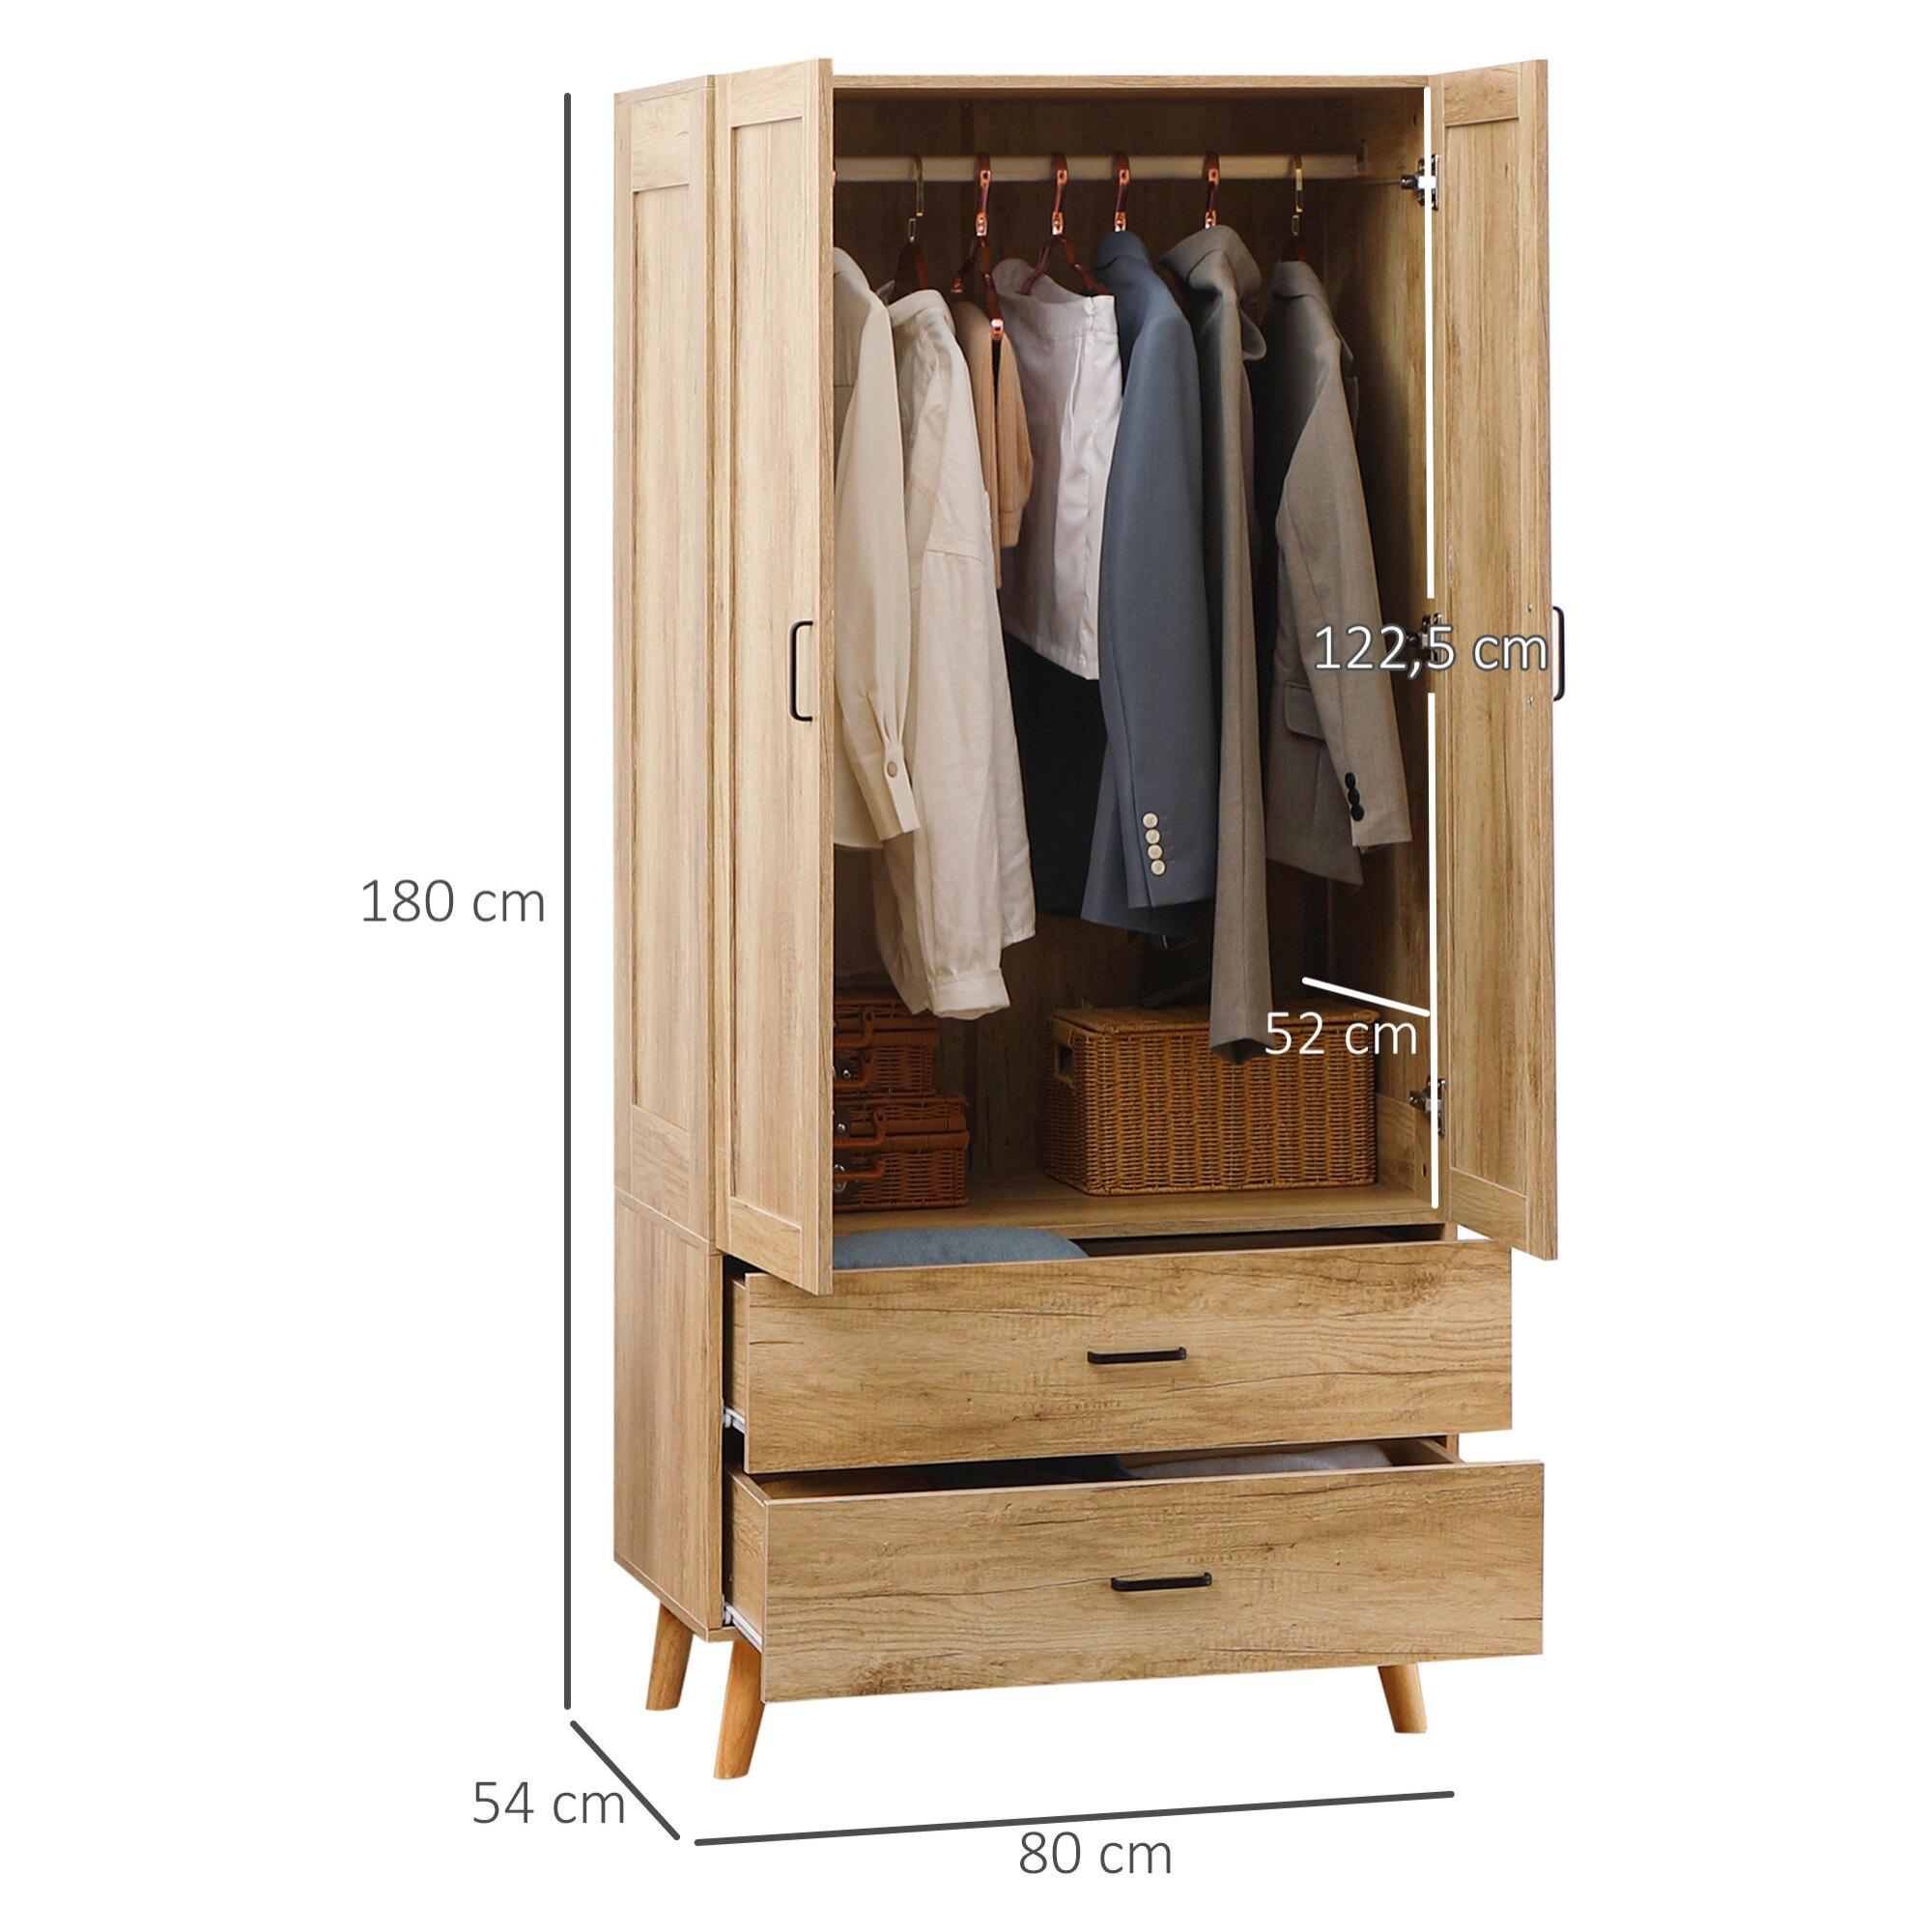 Armoire de rangement design scandinave - armoire de chambre - placard 2 portes avec penderie - 2 tiroirs - aspect chêne clair